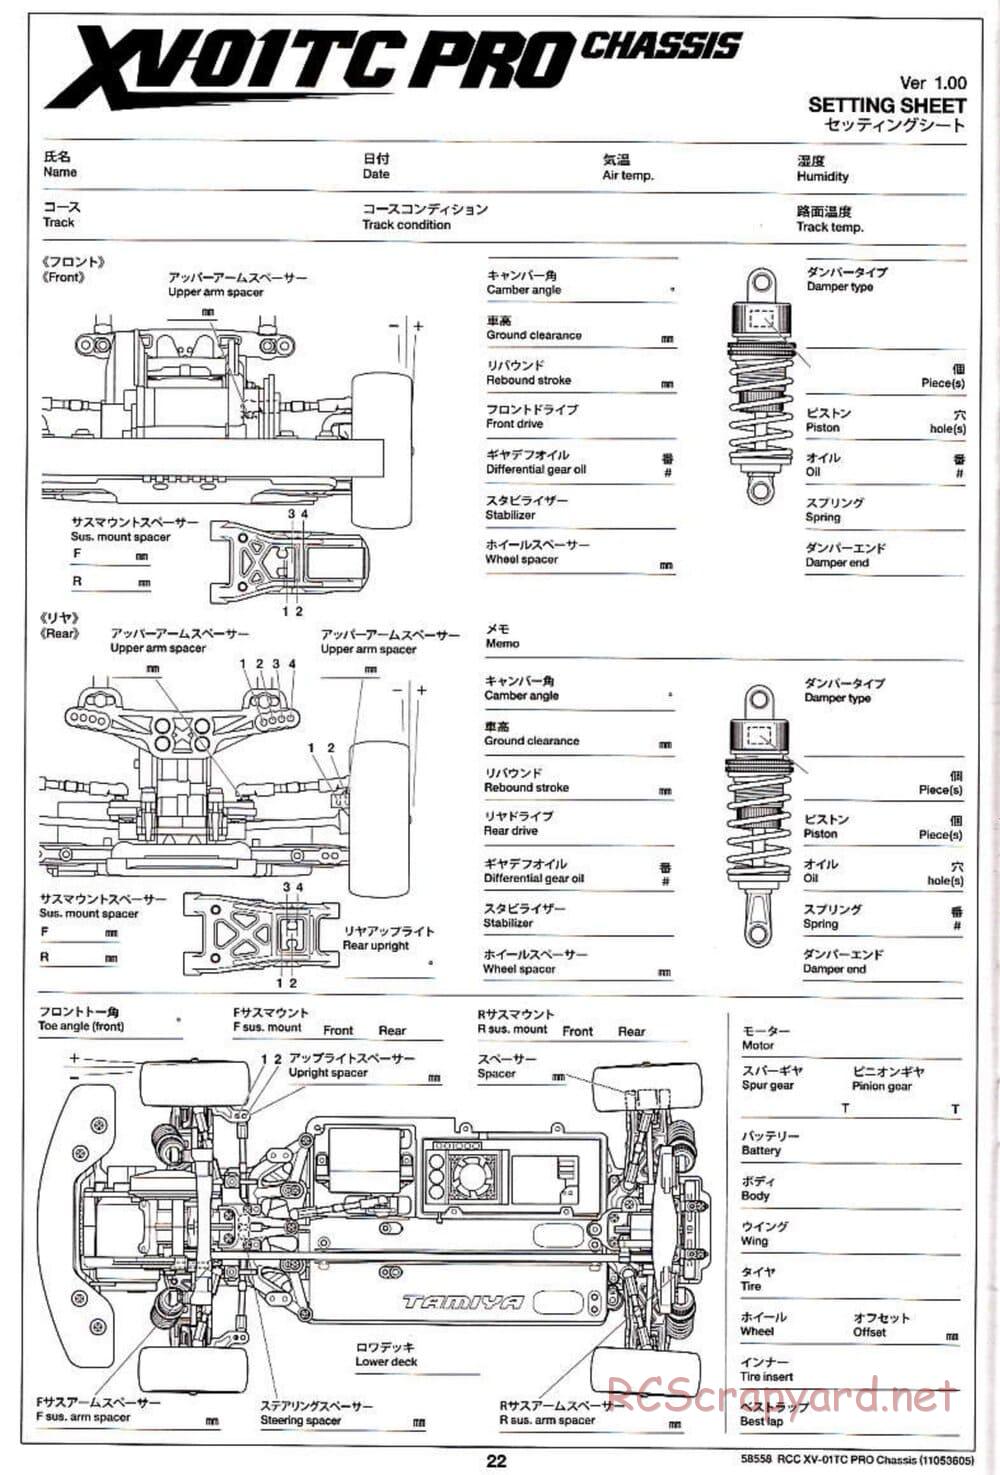 Tamiya - XV-01TC Chassis - Manual - Page 22